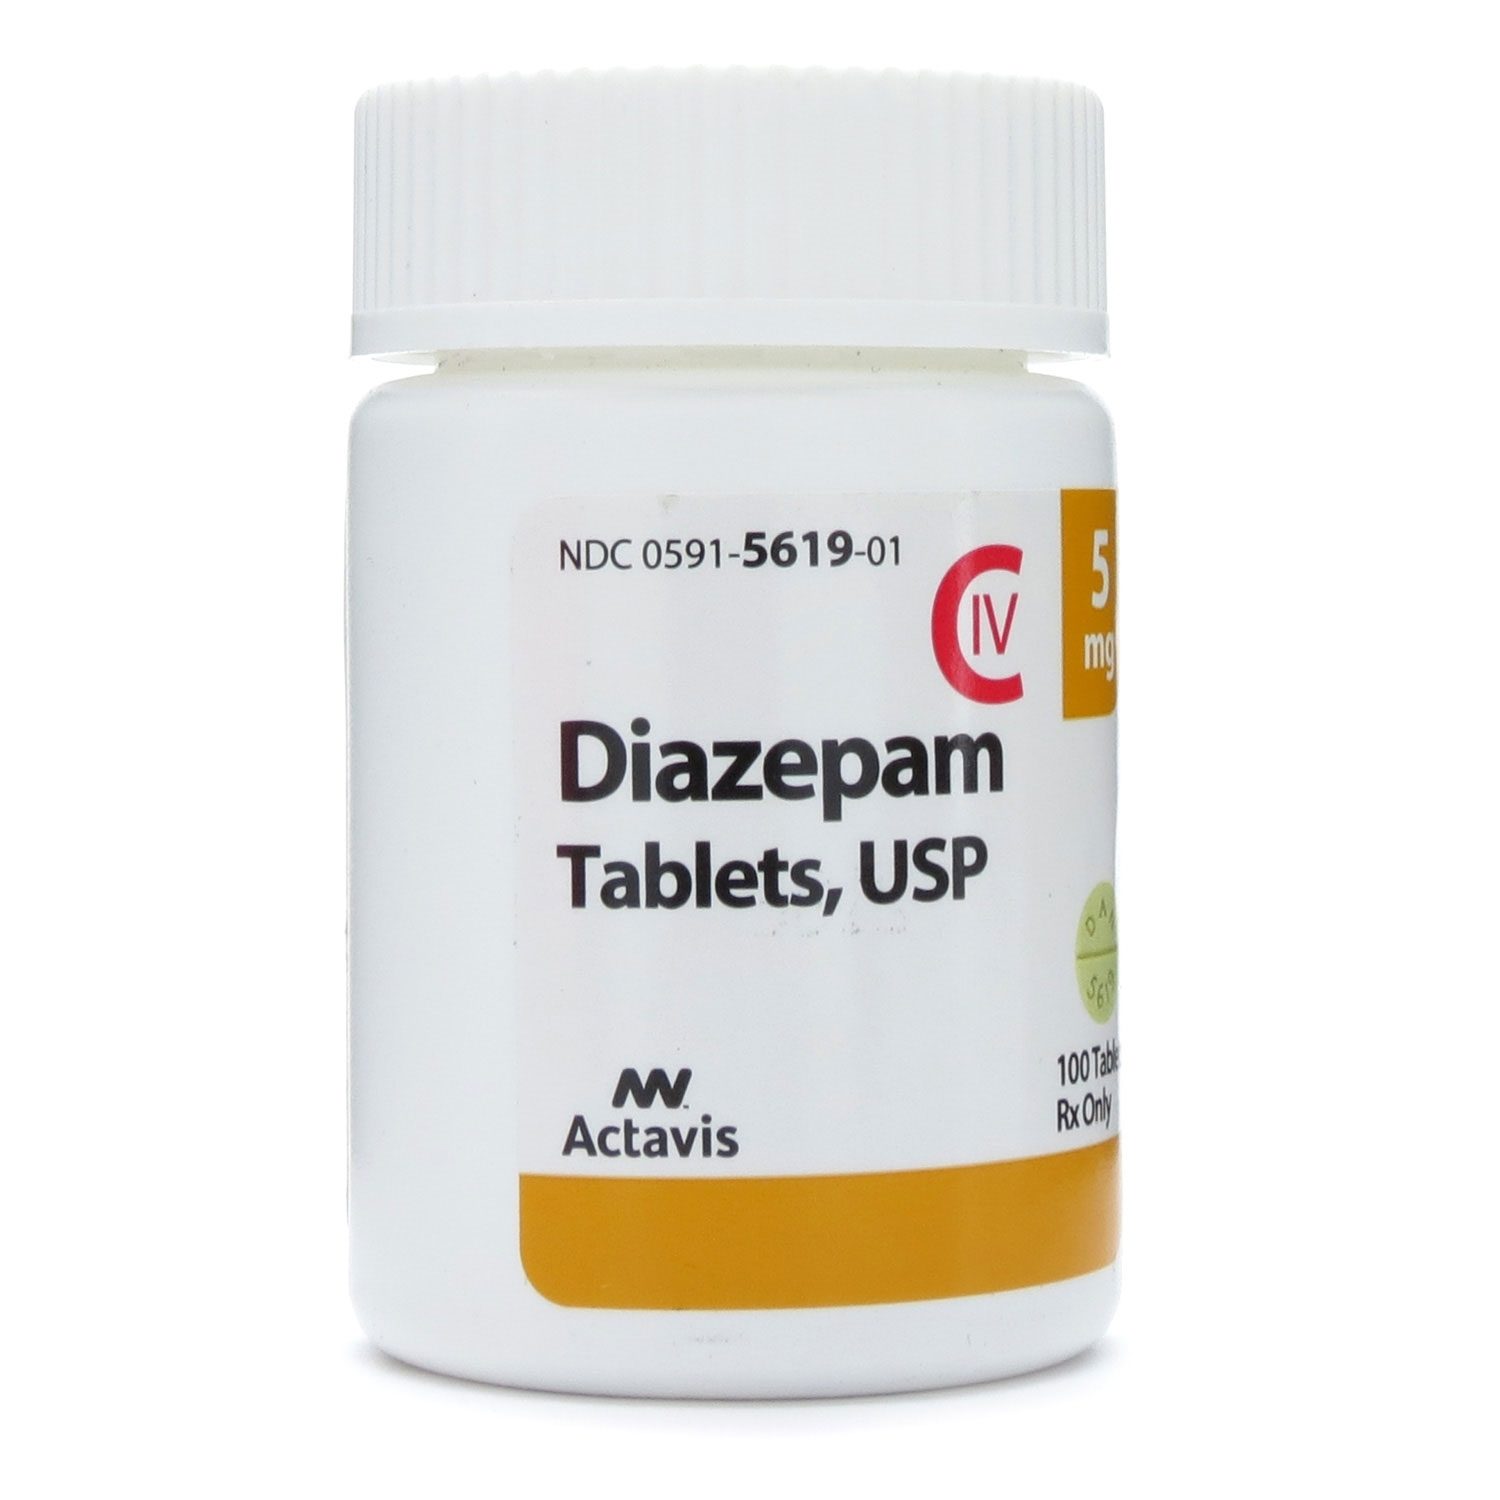 Comprar diazepam en línea